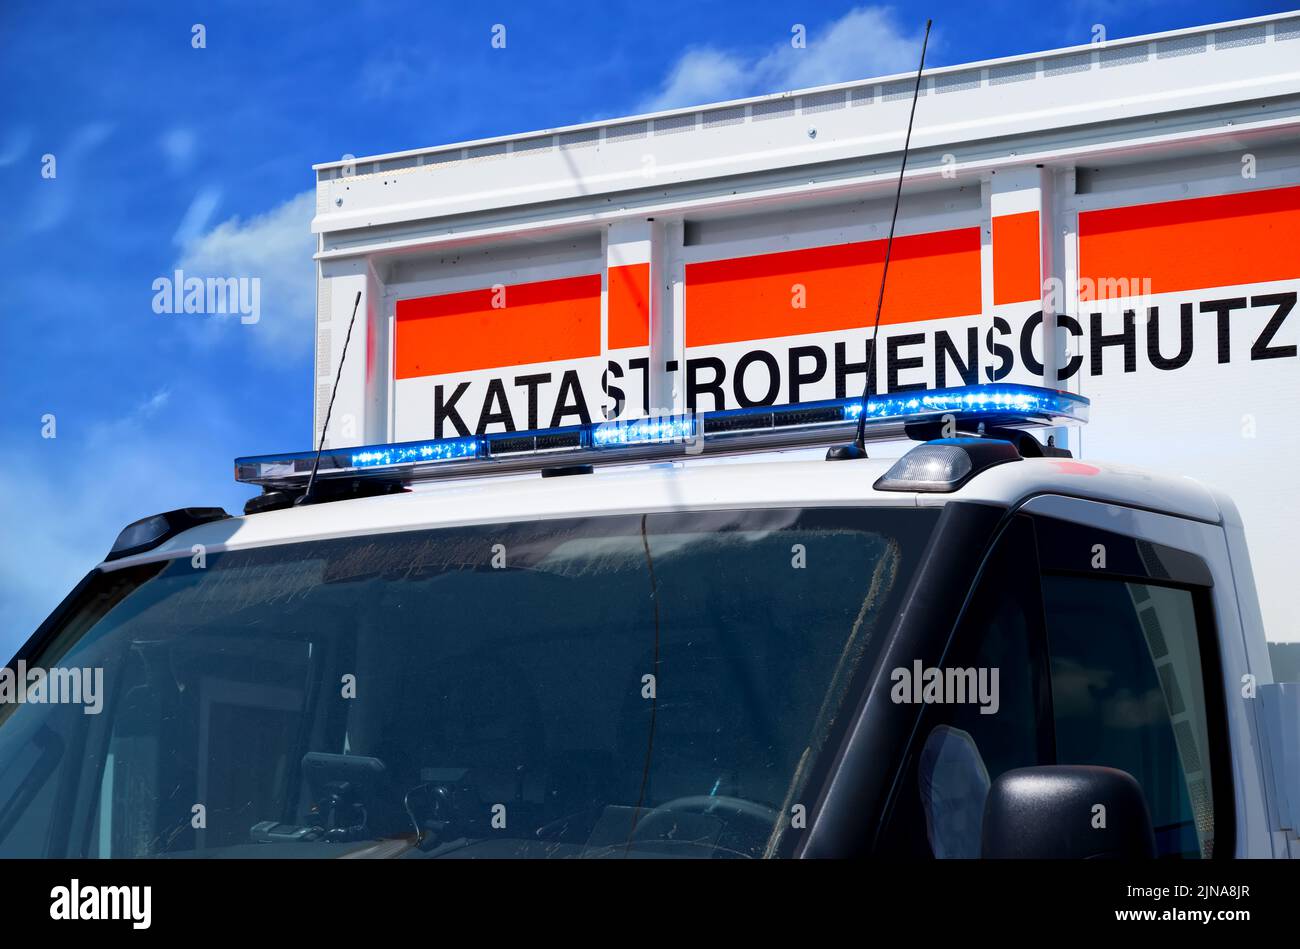 Einsatzfahrzeug mit dem Schriftzug Katastrophenschutz – Katastrophenschutz Einsatzfahrzeug Stockfoto